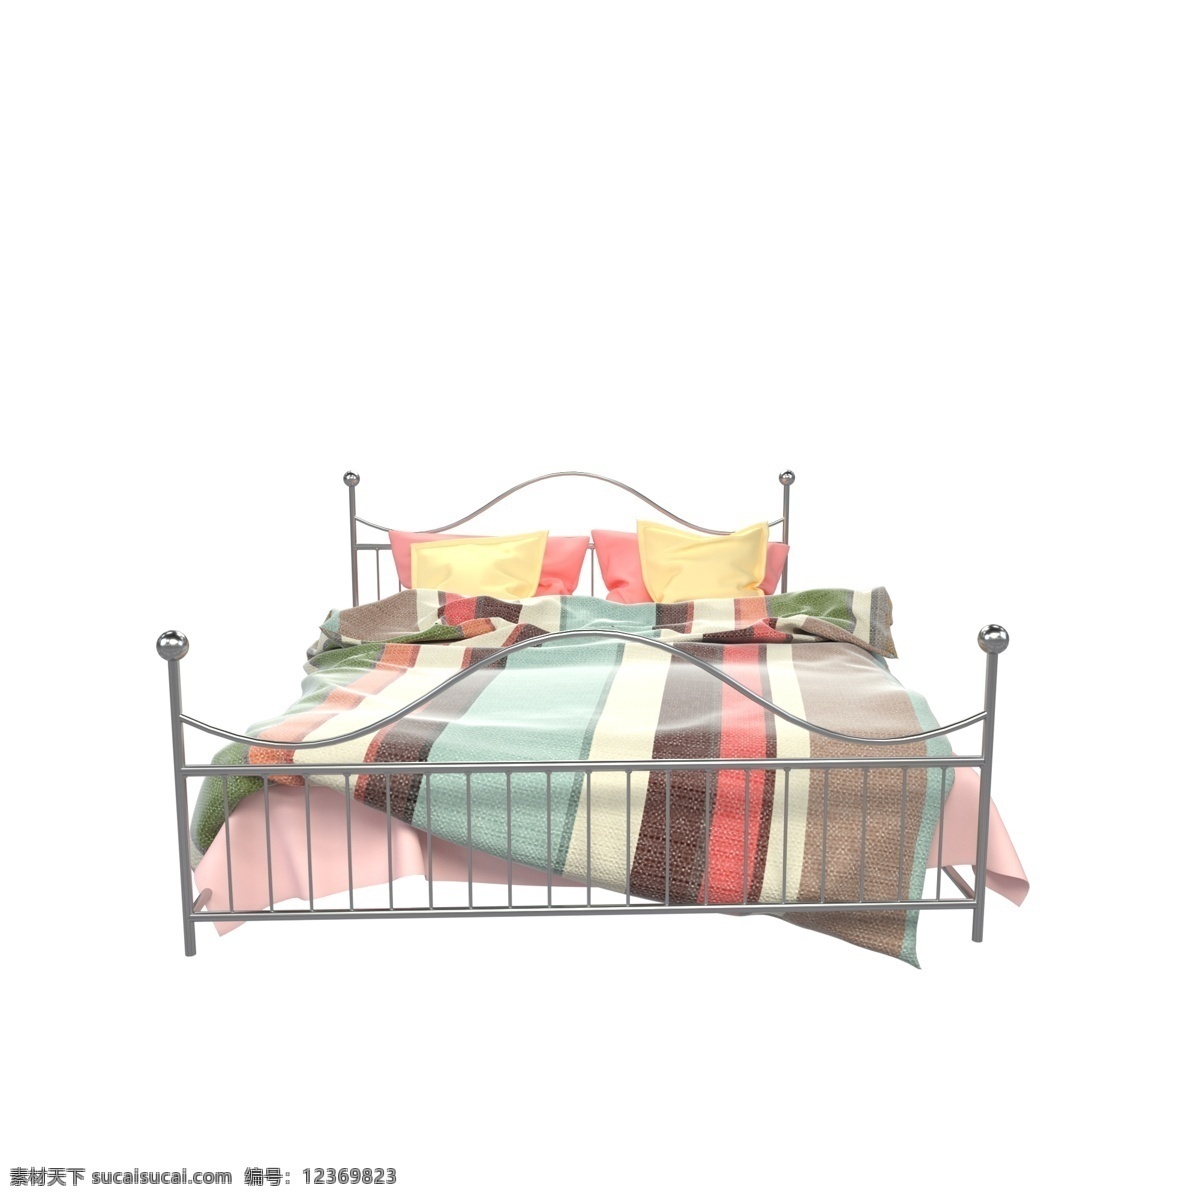 金属 欧式 双人 铁床 c4d 双人床 写实 3d 布料 欧式床 单人床 家居 家具 家装 卧室家居 床单 床垫 木床 木质 橙色 暖色